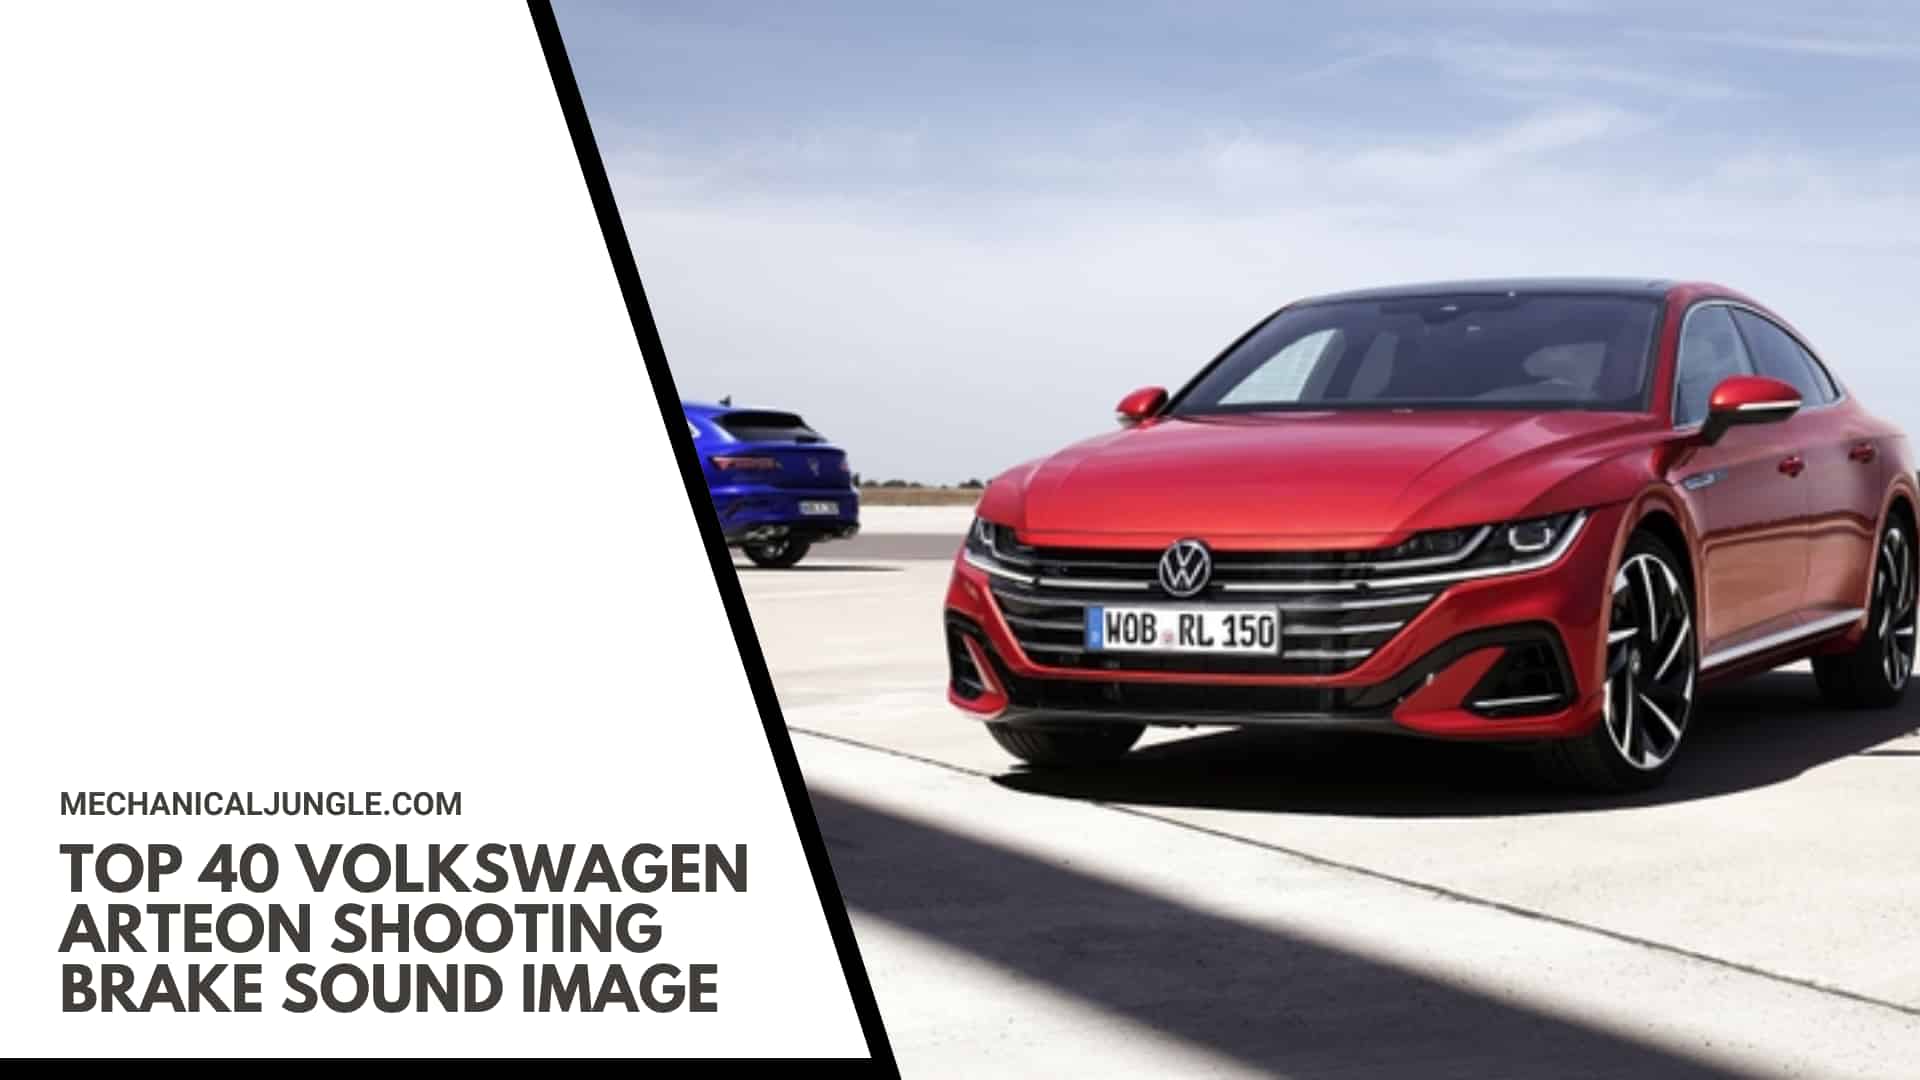 Top 40 Volkswagen Arteon Shooting Brake Sound Image